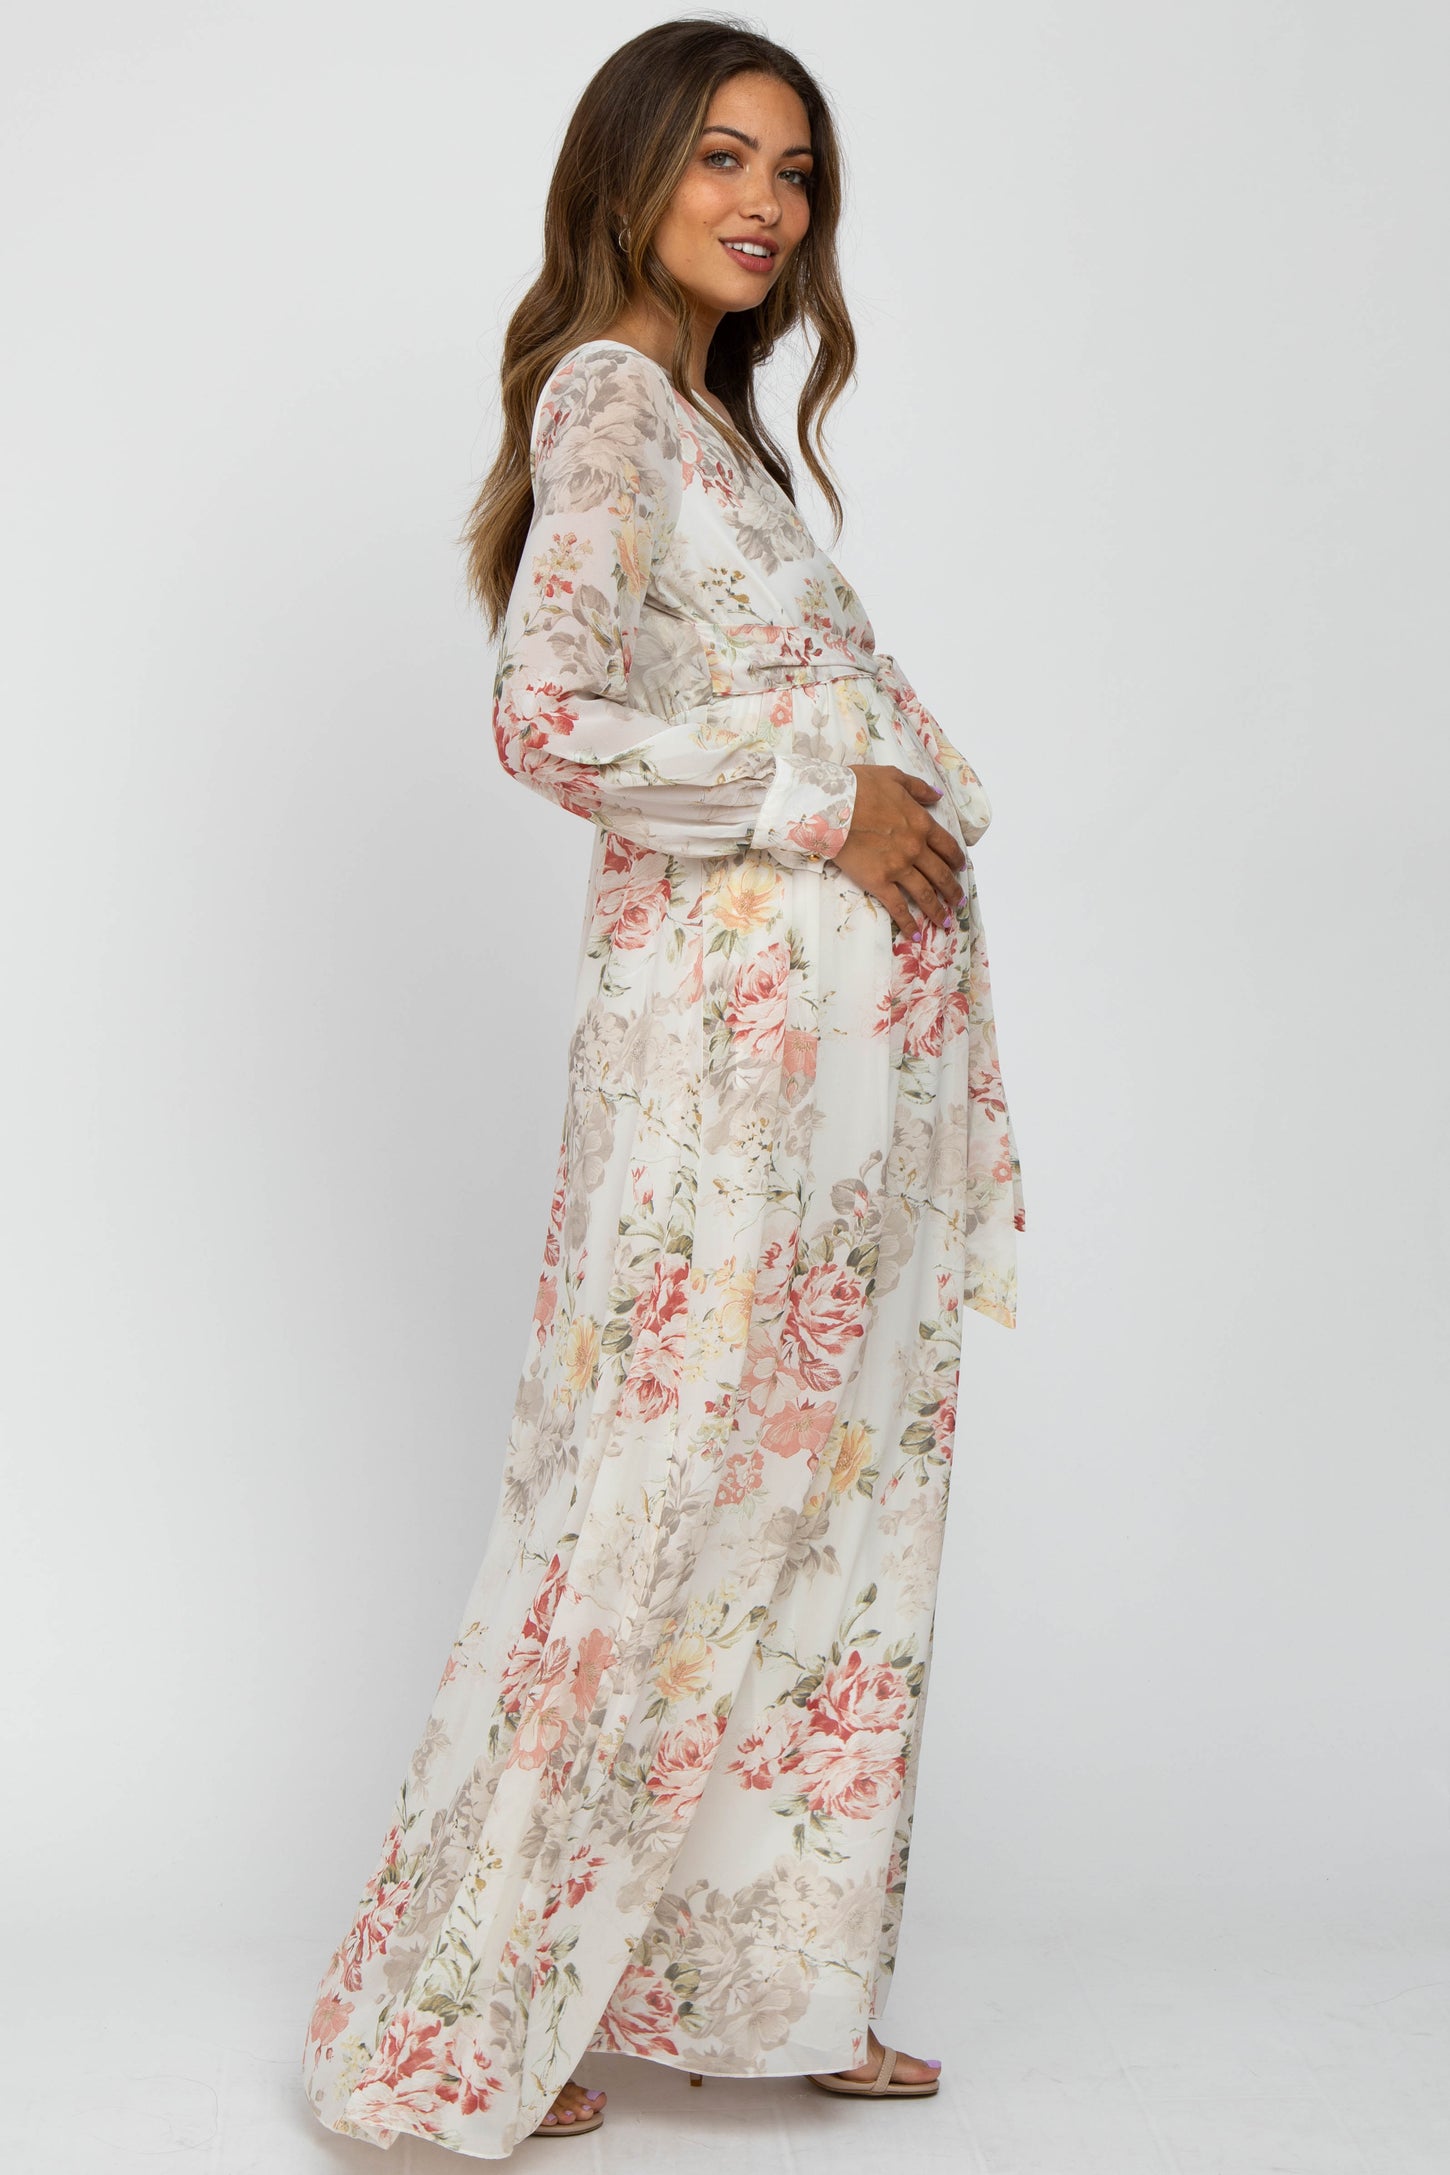 Ivory Floral Chiffon Maternity Maxi Dress– PinkBlush